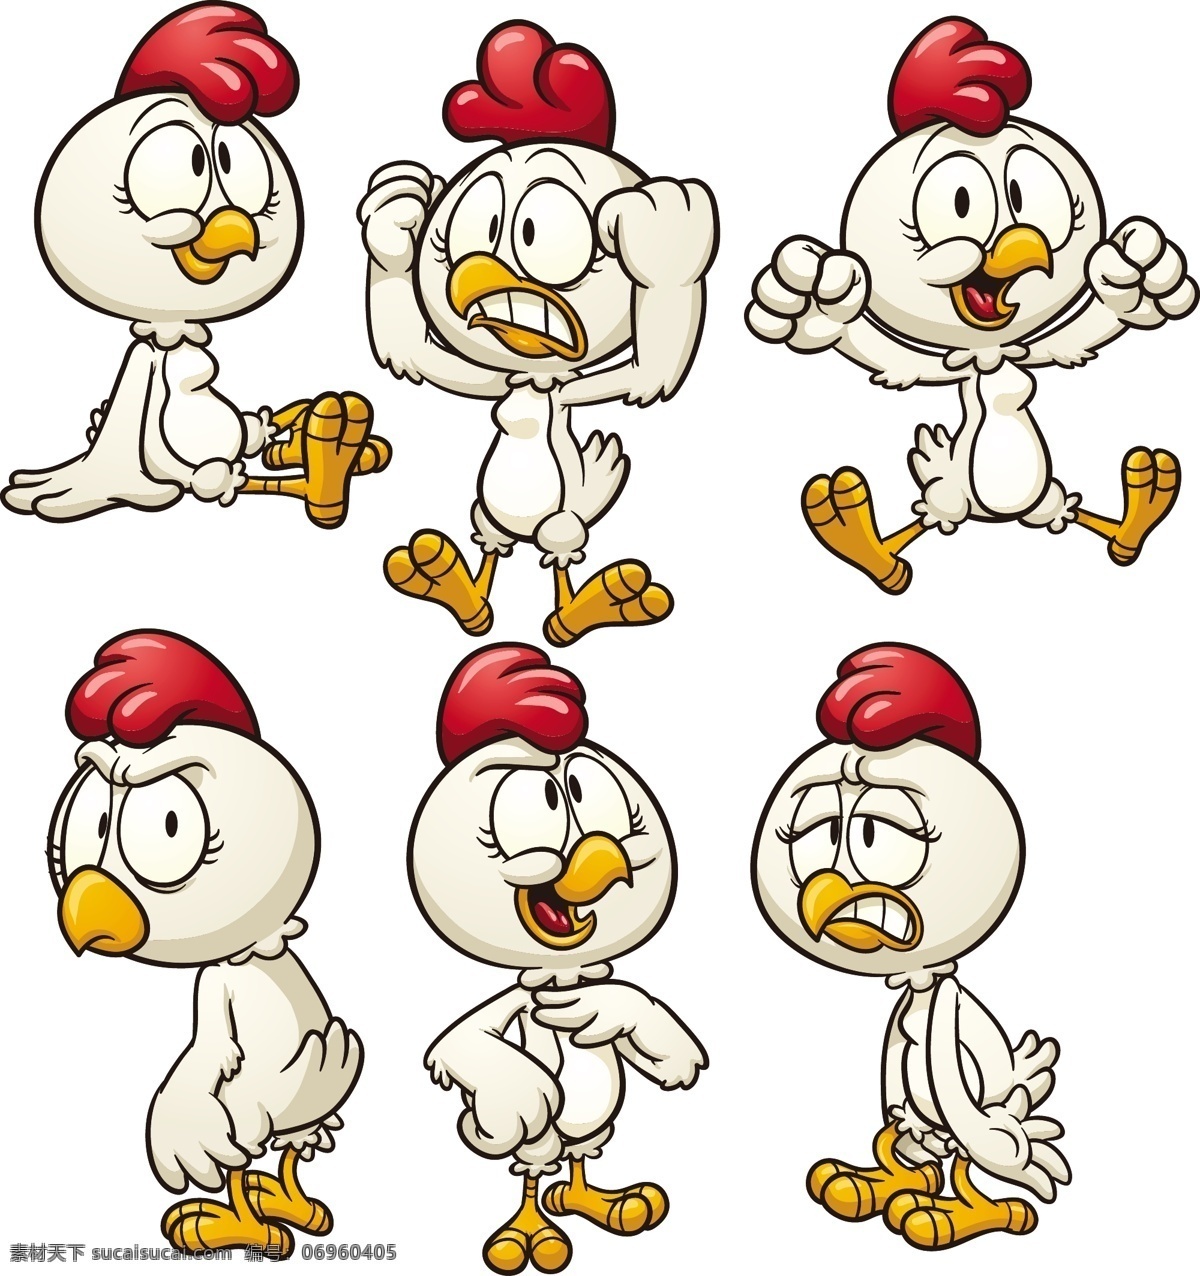 卡通小鸡表情 卡通 可爱 小鸡 公鸡 表情 幽默 滑稽 有趣 手绘 矢量 动物家禽家畜 家禽家畜 生物世界